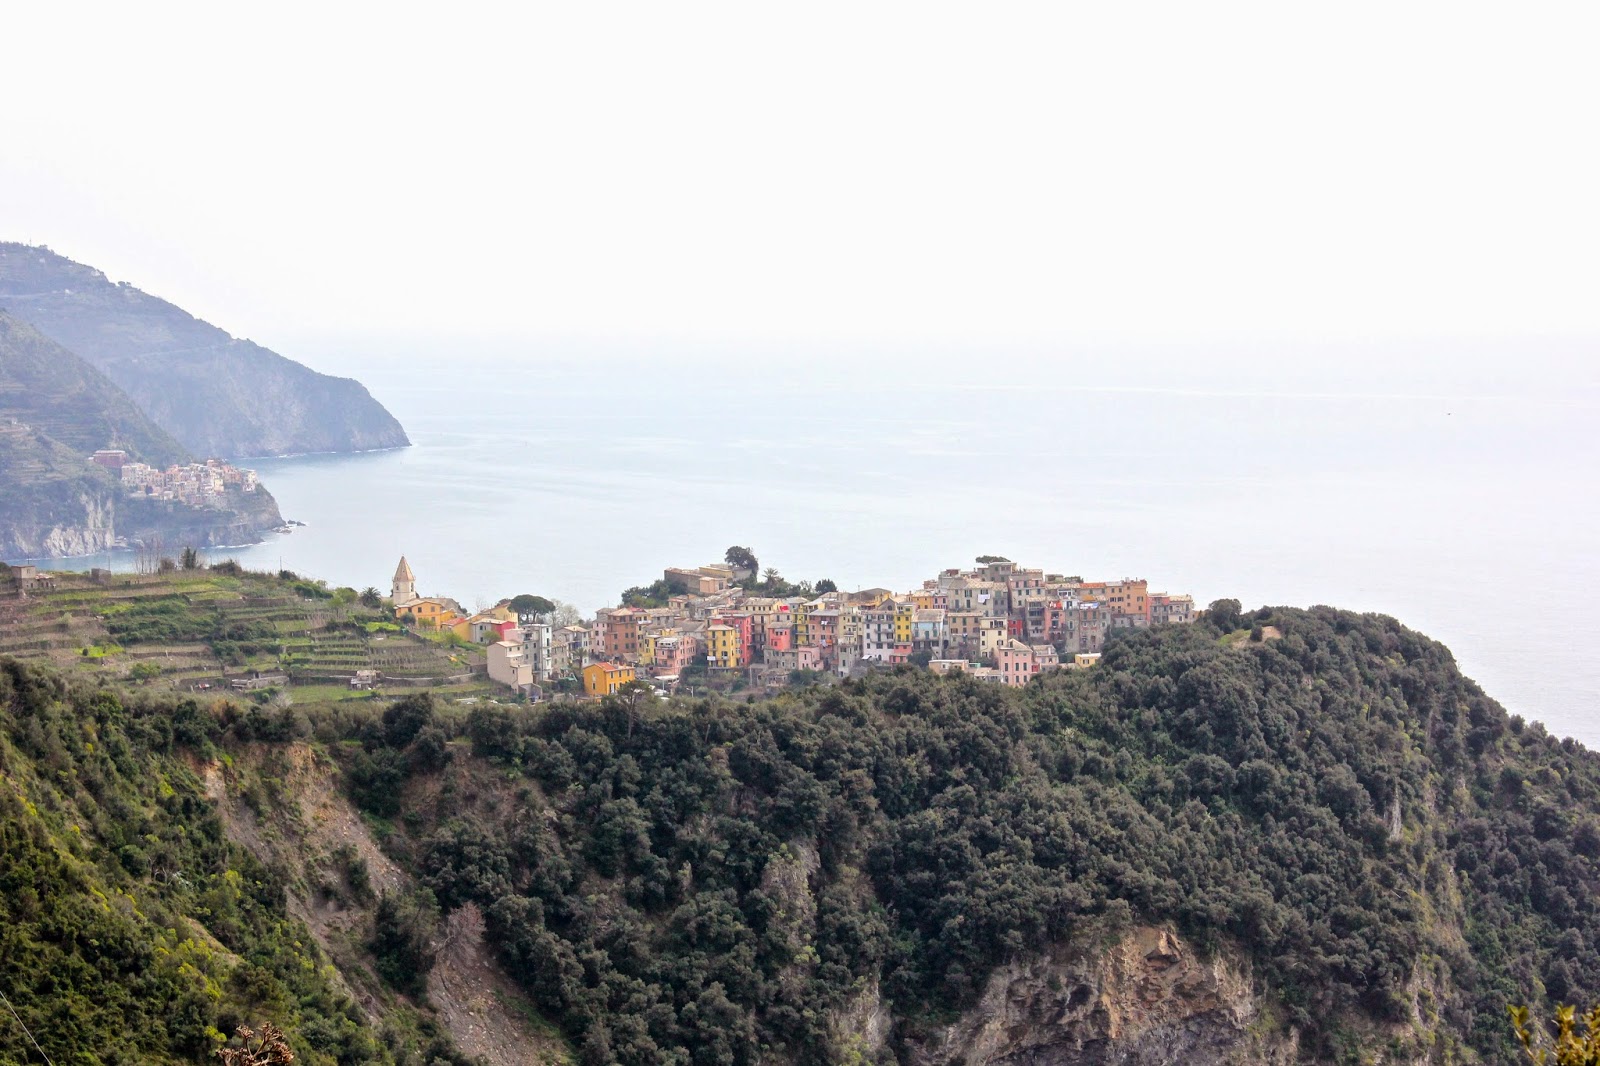 Corniglia in the Cinque Terre